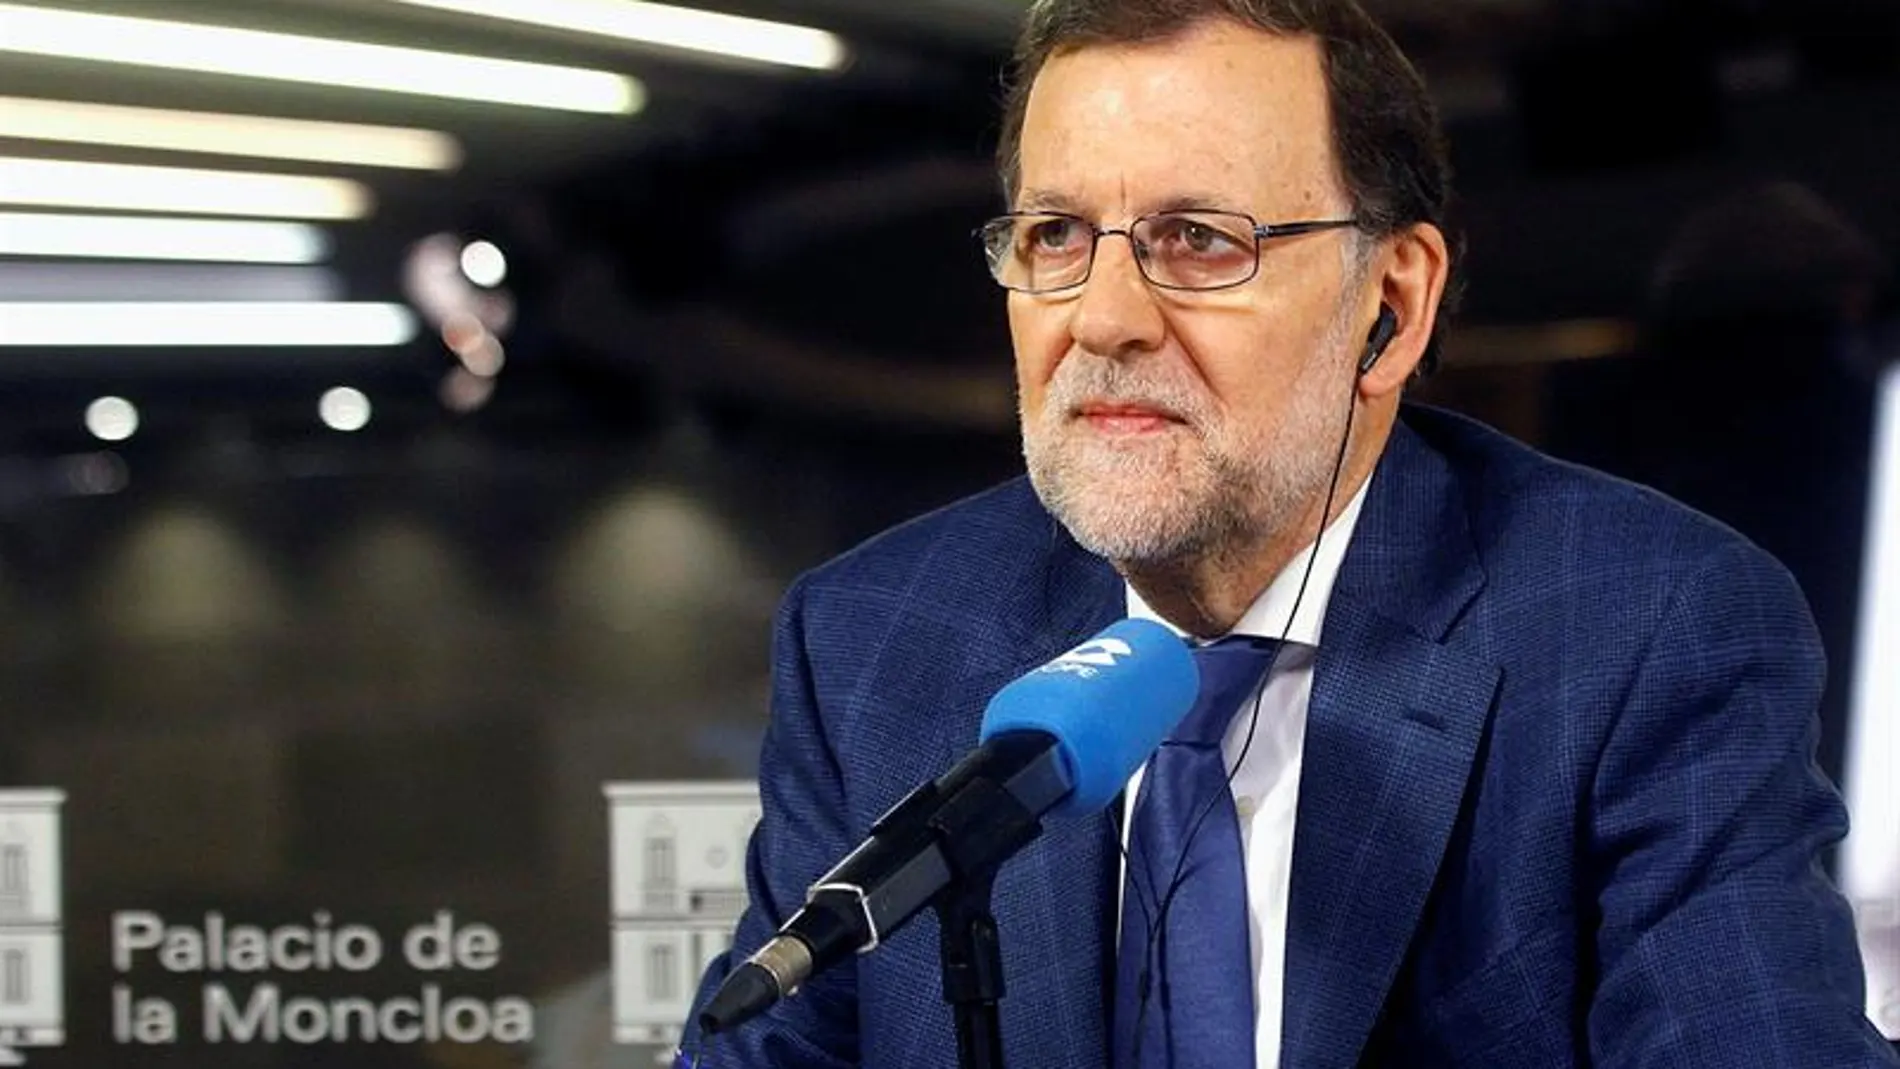 Fotografía facilitada por Presidencia del Gobierno, del jefe del Ejecutivo, Mariano Rajoy